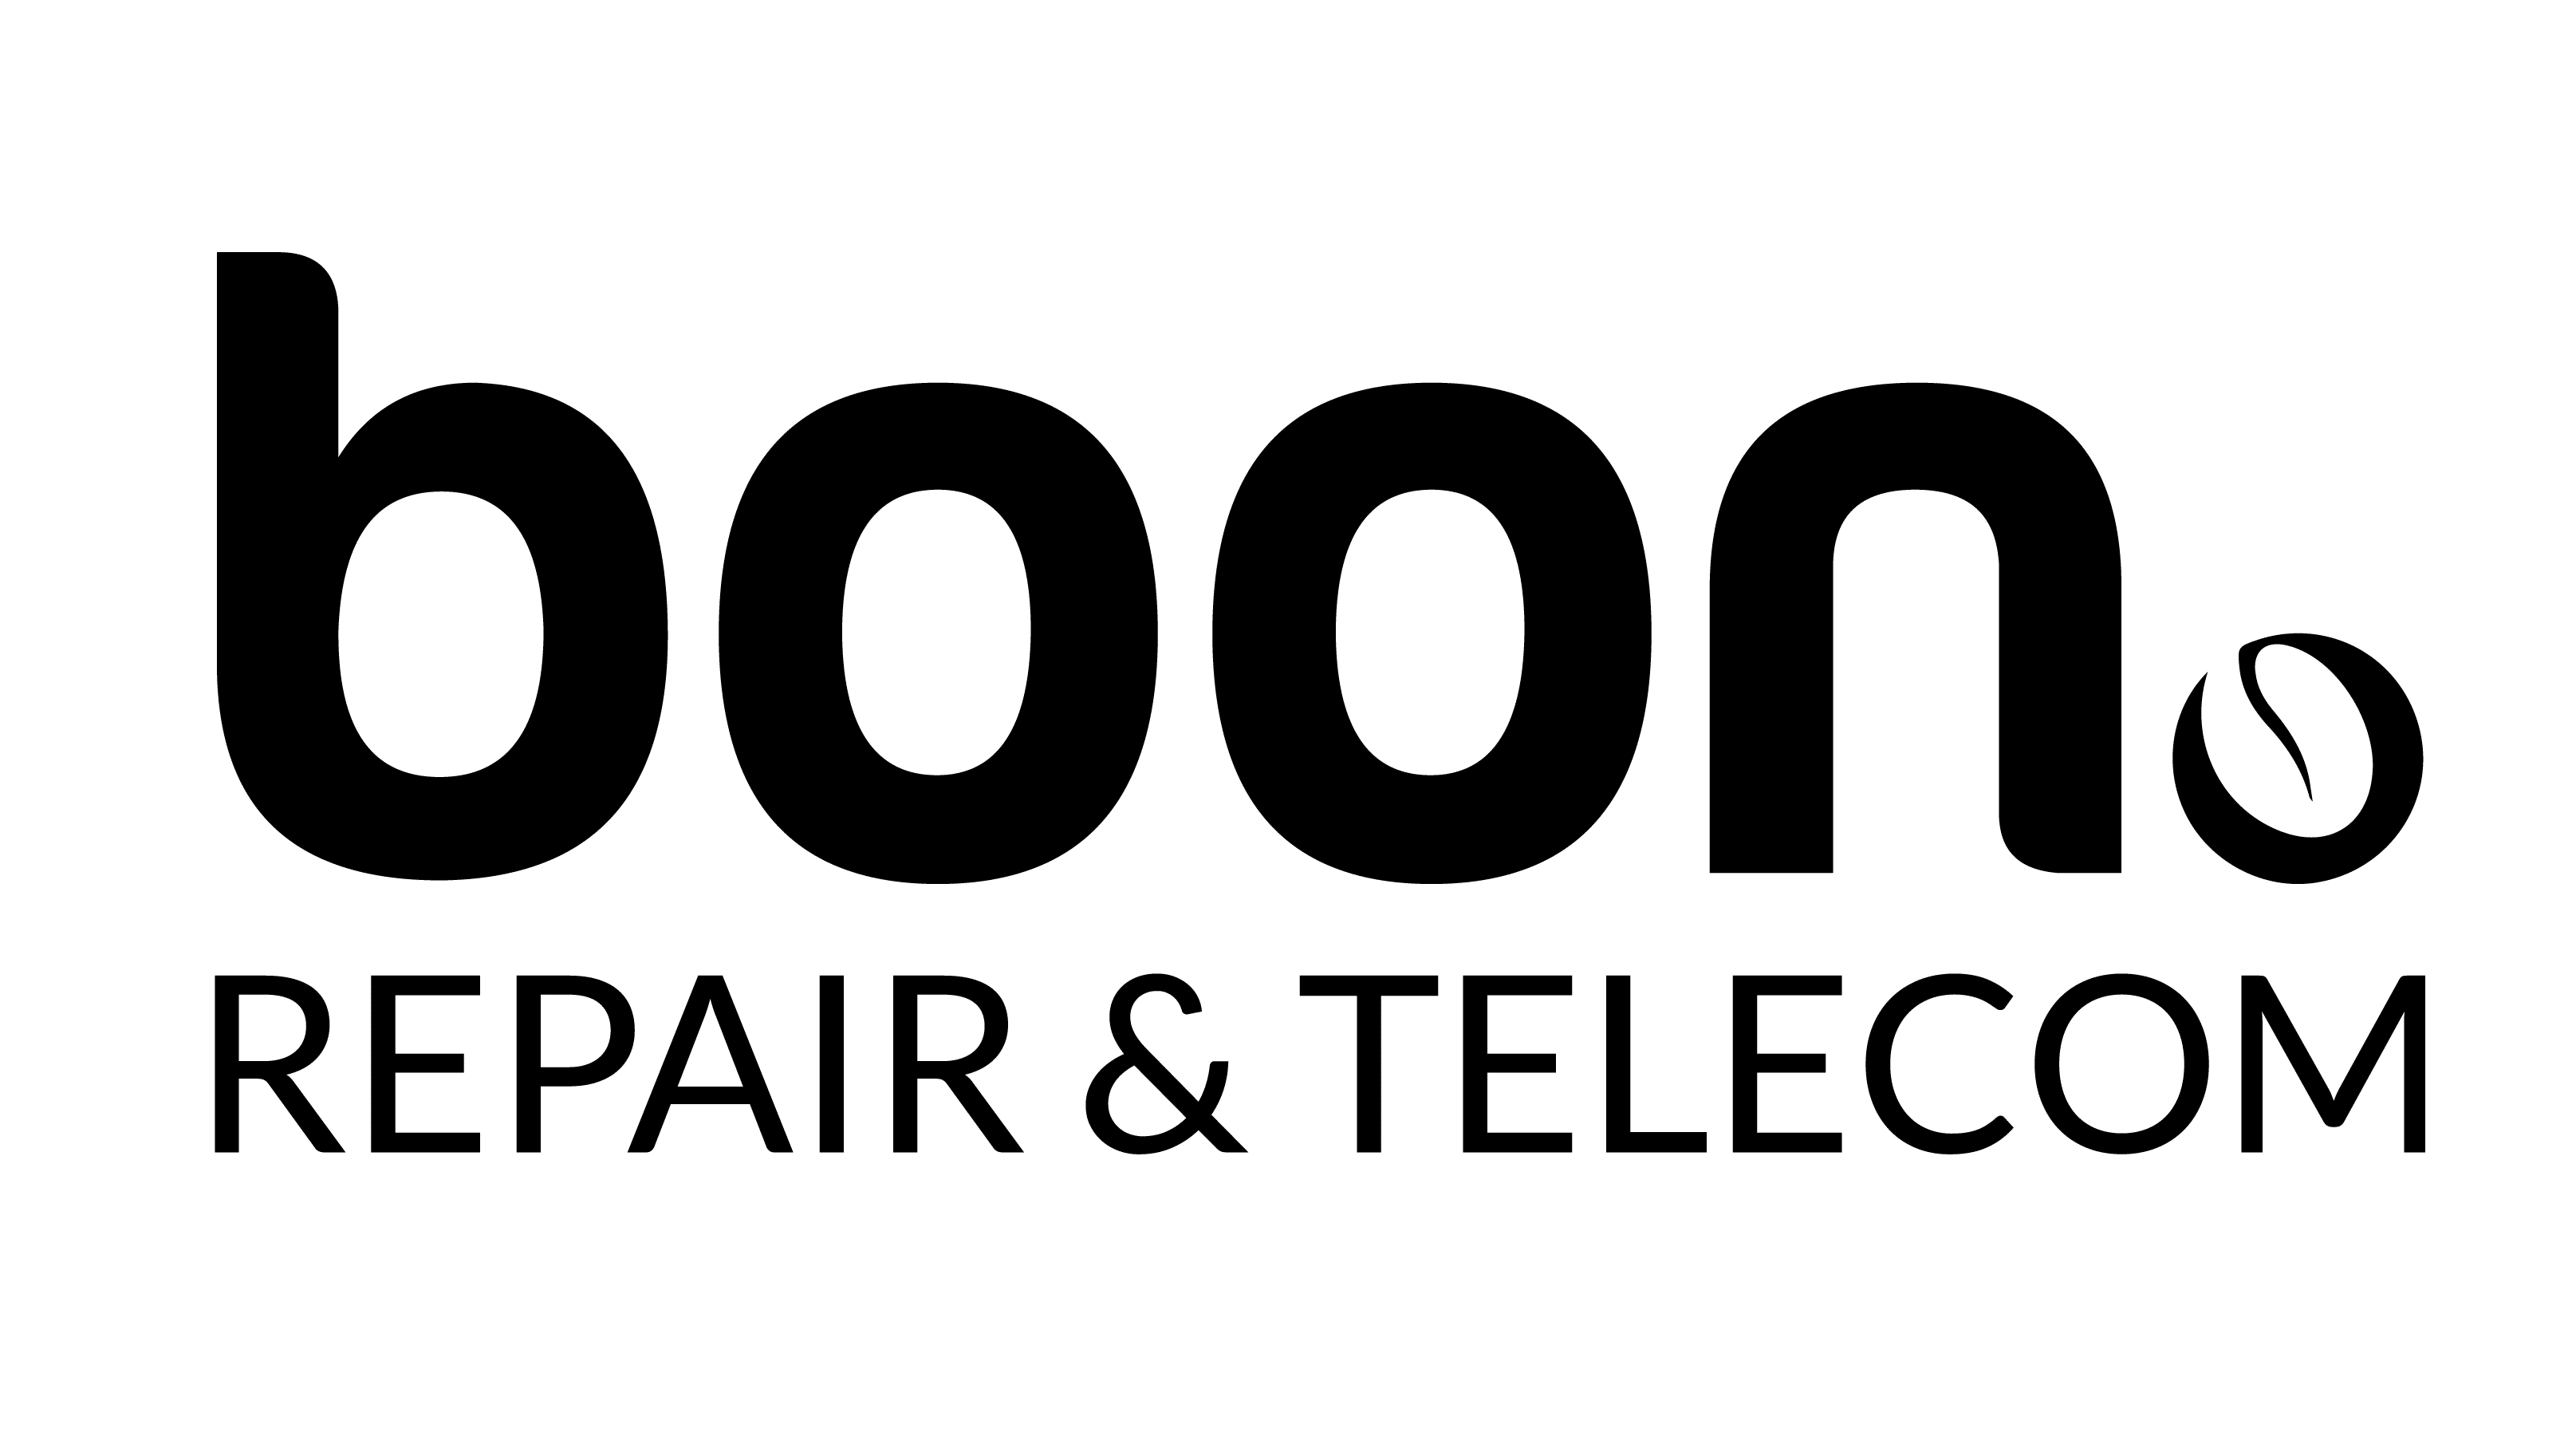 Boon Repair & Telecom